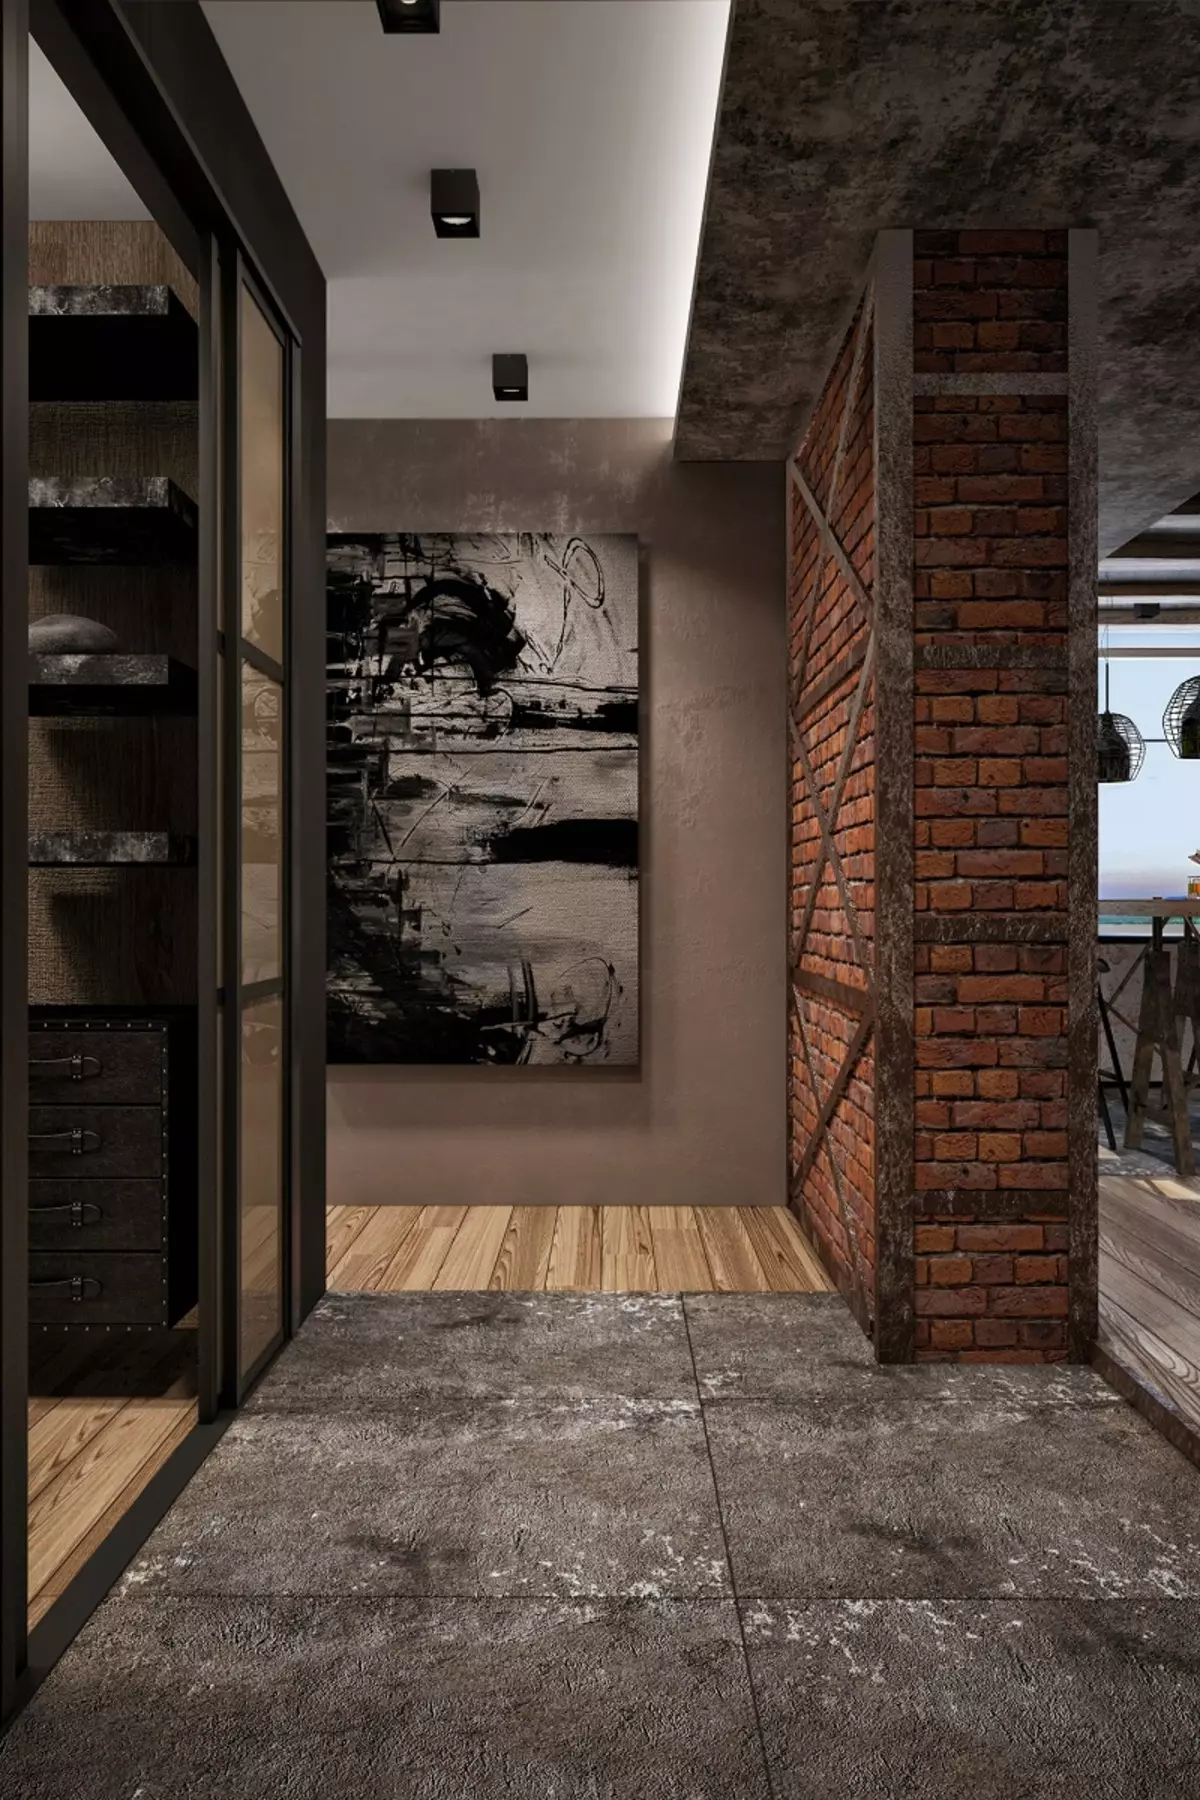 Loft tarzında Giriş holü (76 fotoğraf): küçük bir koridor iç kısmında askı ve mobilya, bir tuğla duvar ile bir koridor tasarımı, bir tezgah ve dolap seçim 9088_22